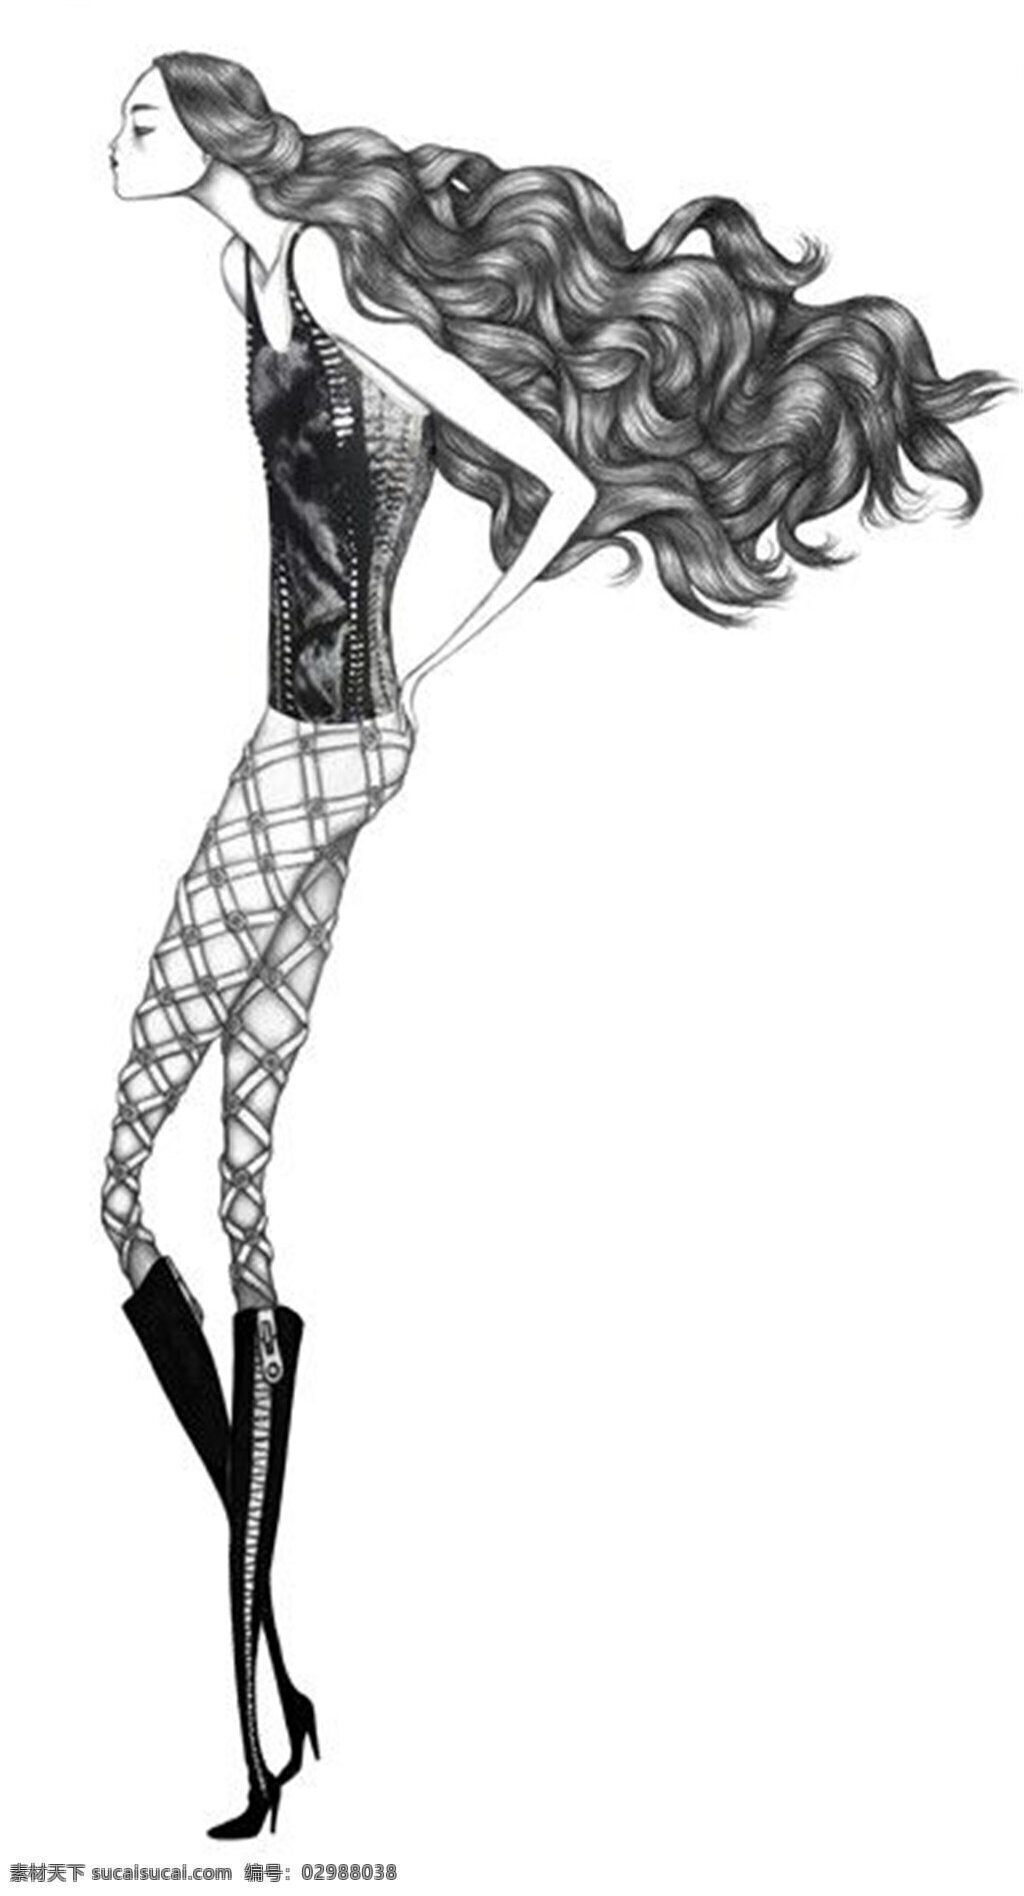 时尚 个性 黑色 背心 女装 效果图 服装设计 服装效果图 黑色长靴